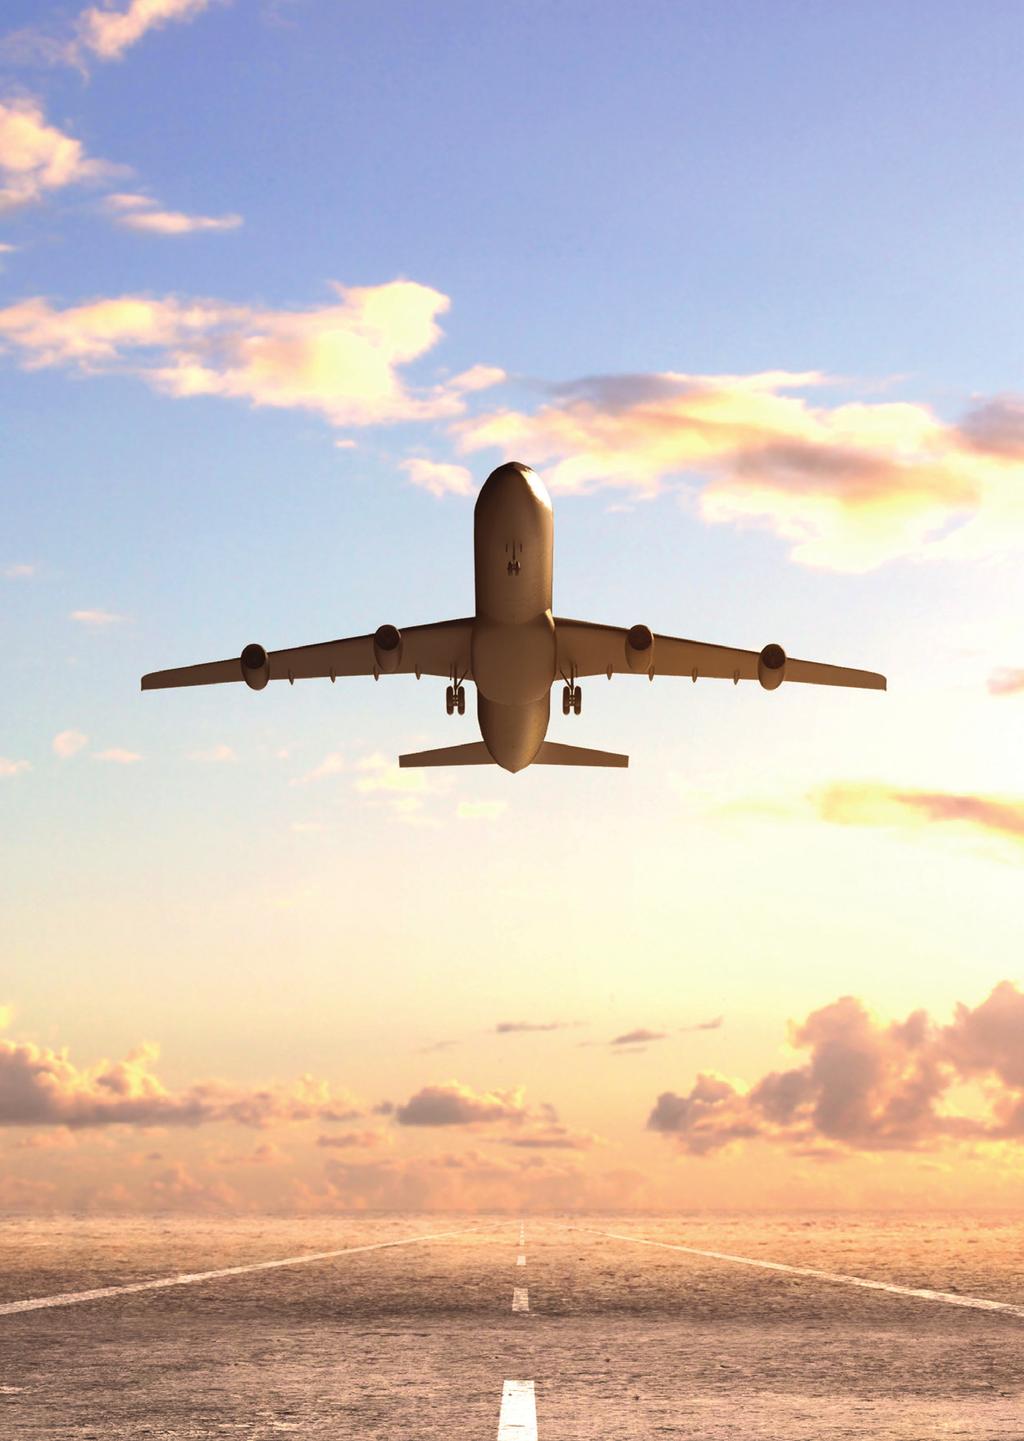 PRENOTAZIONI AEREE Con il software custom fares integrato con il GDS Galileo Travelport l agenzia è in grado di individuare la tariffa più bassa per ogni tratta aerea.